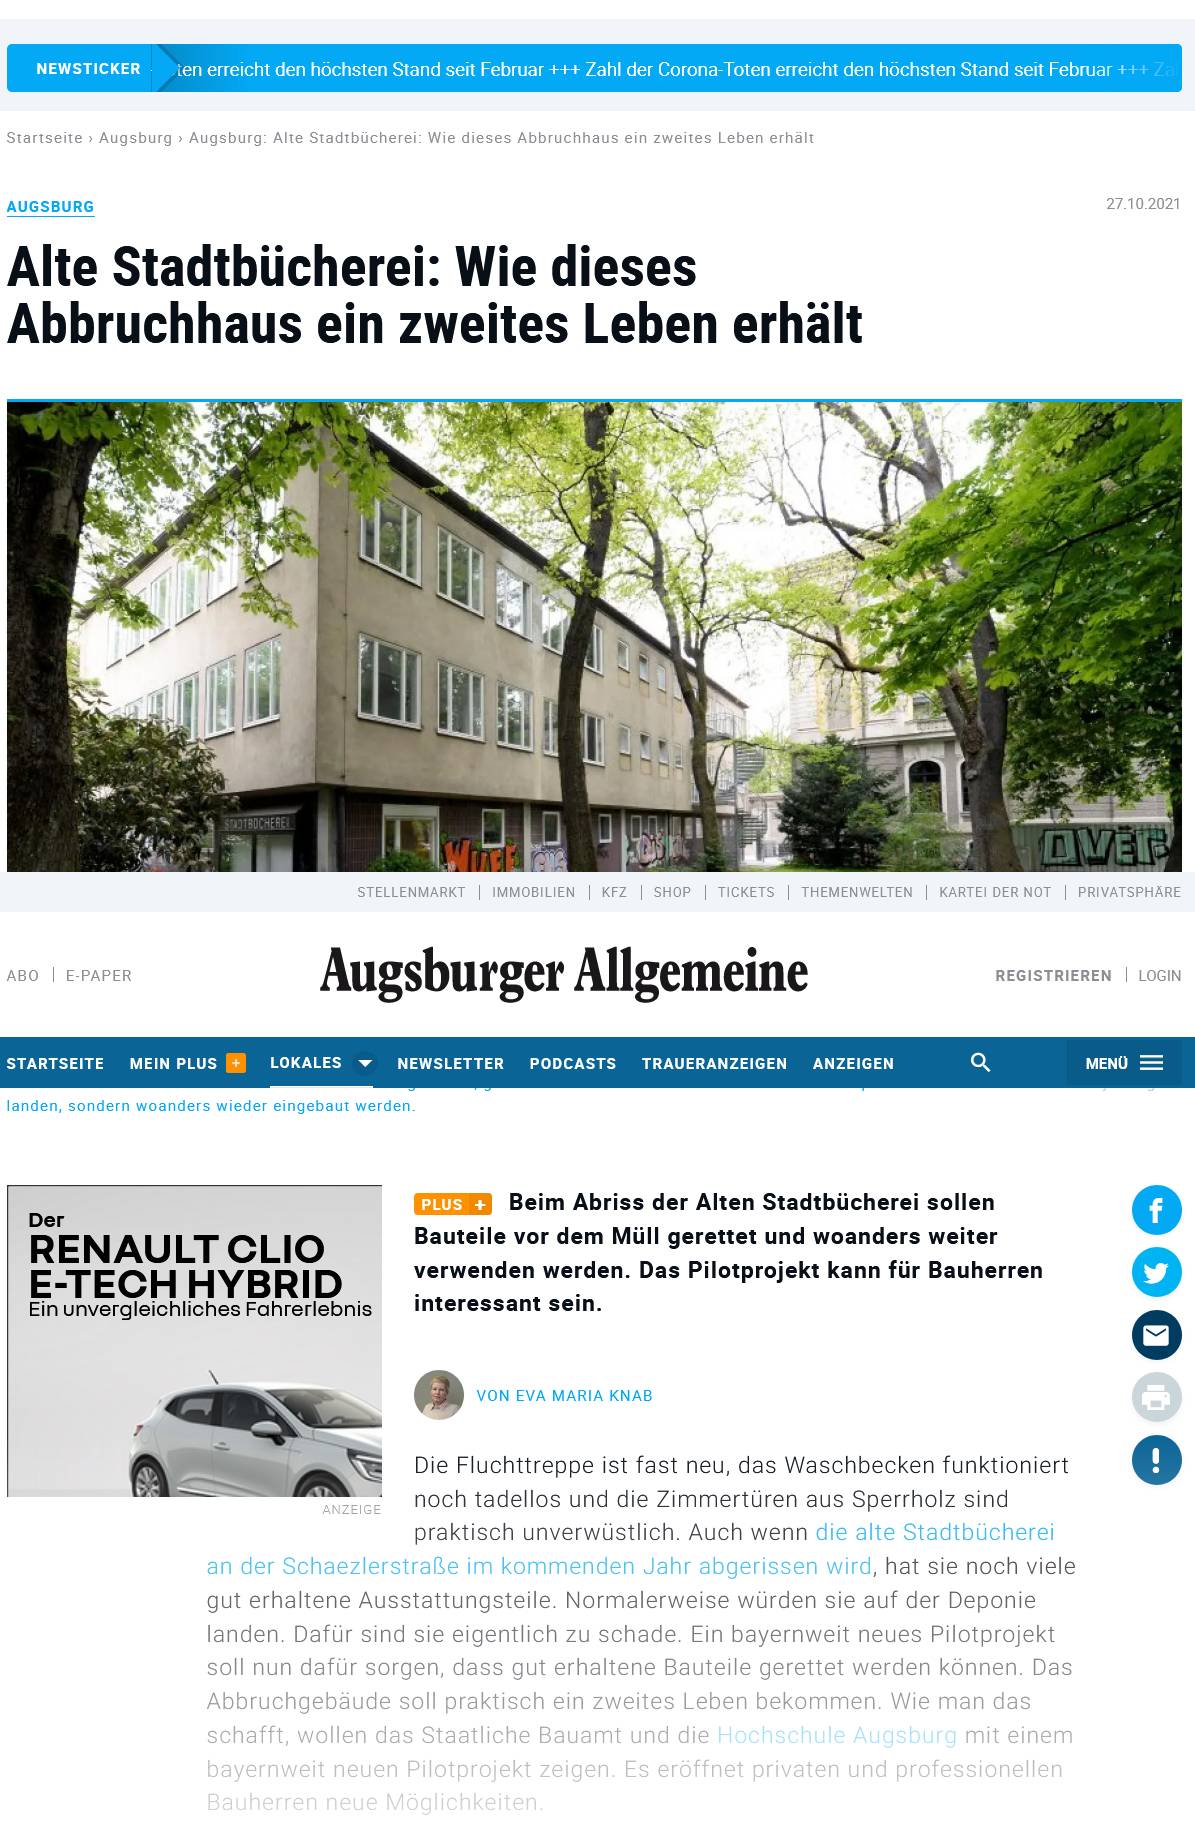 2021-10-27, Augsburger Allgemeine, Online: Wie dieses Abbruchhaus ein zweites Leben erhält